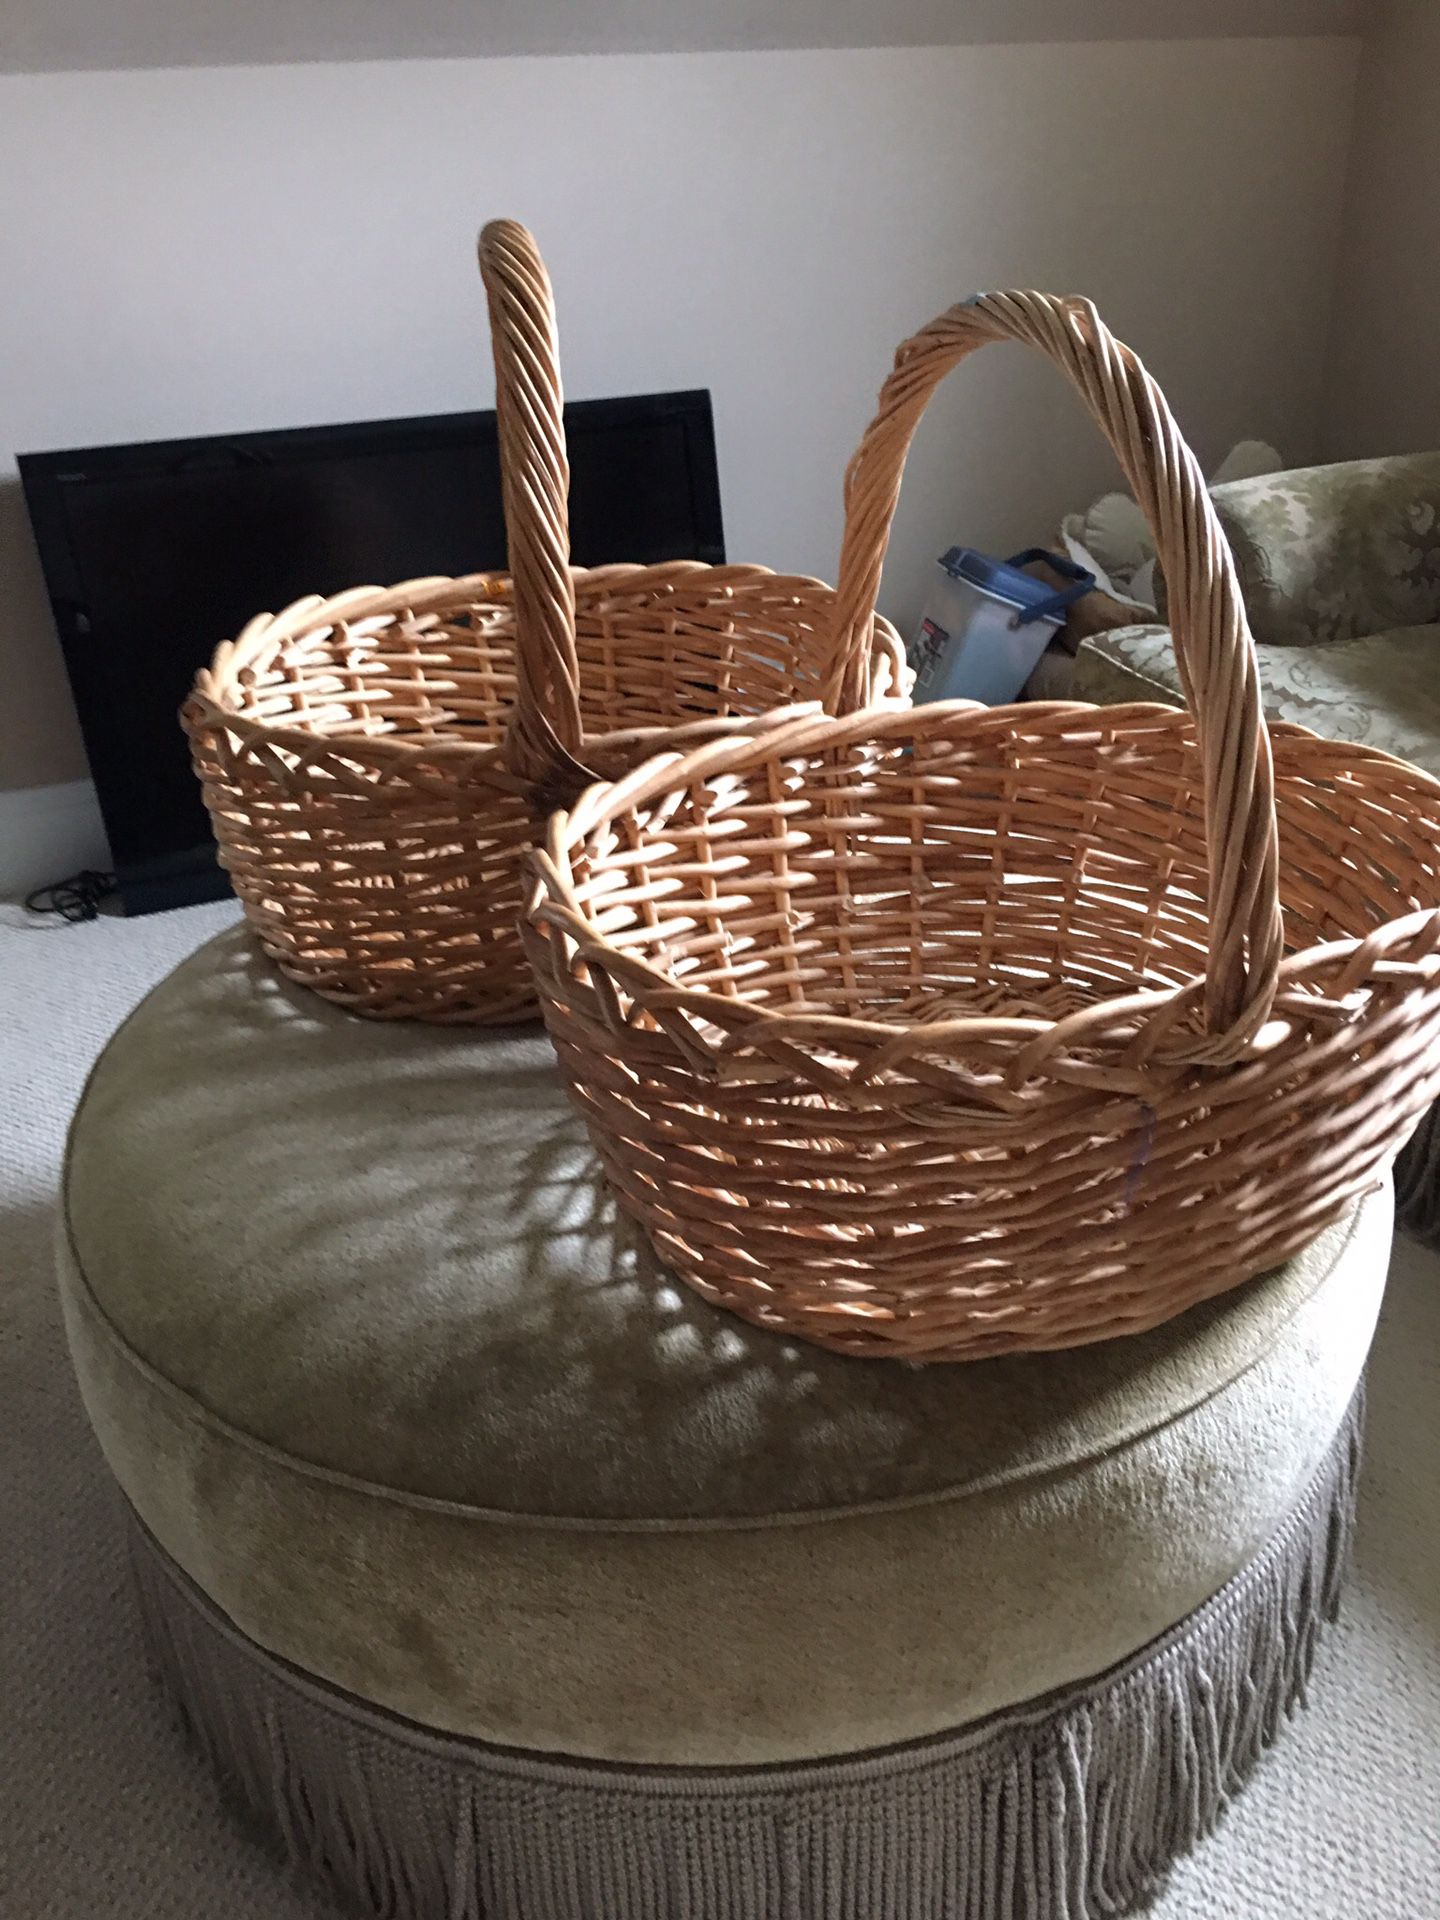 Oversized wicker baskets